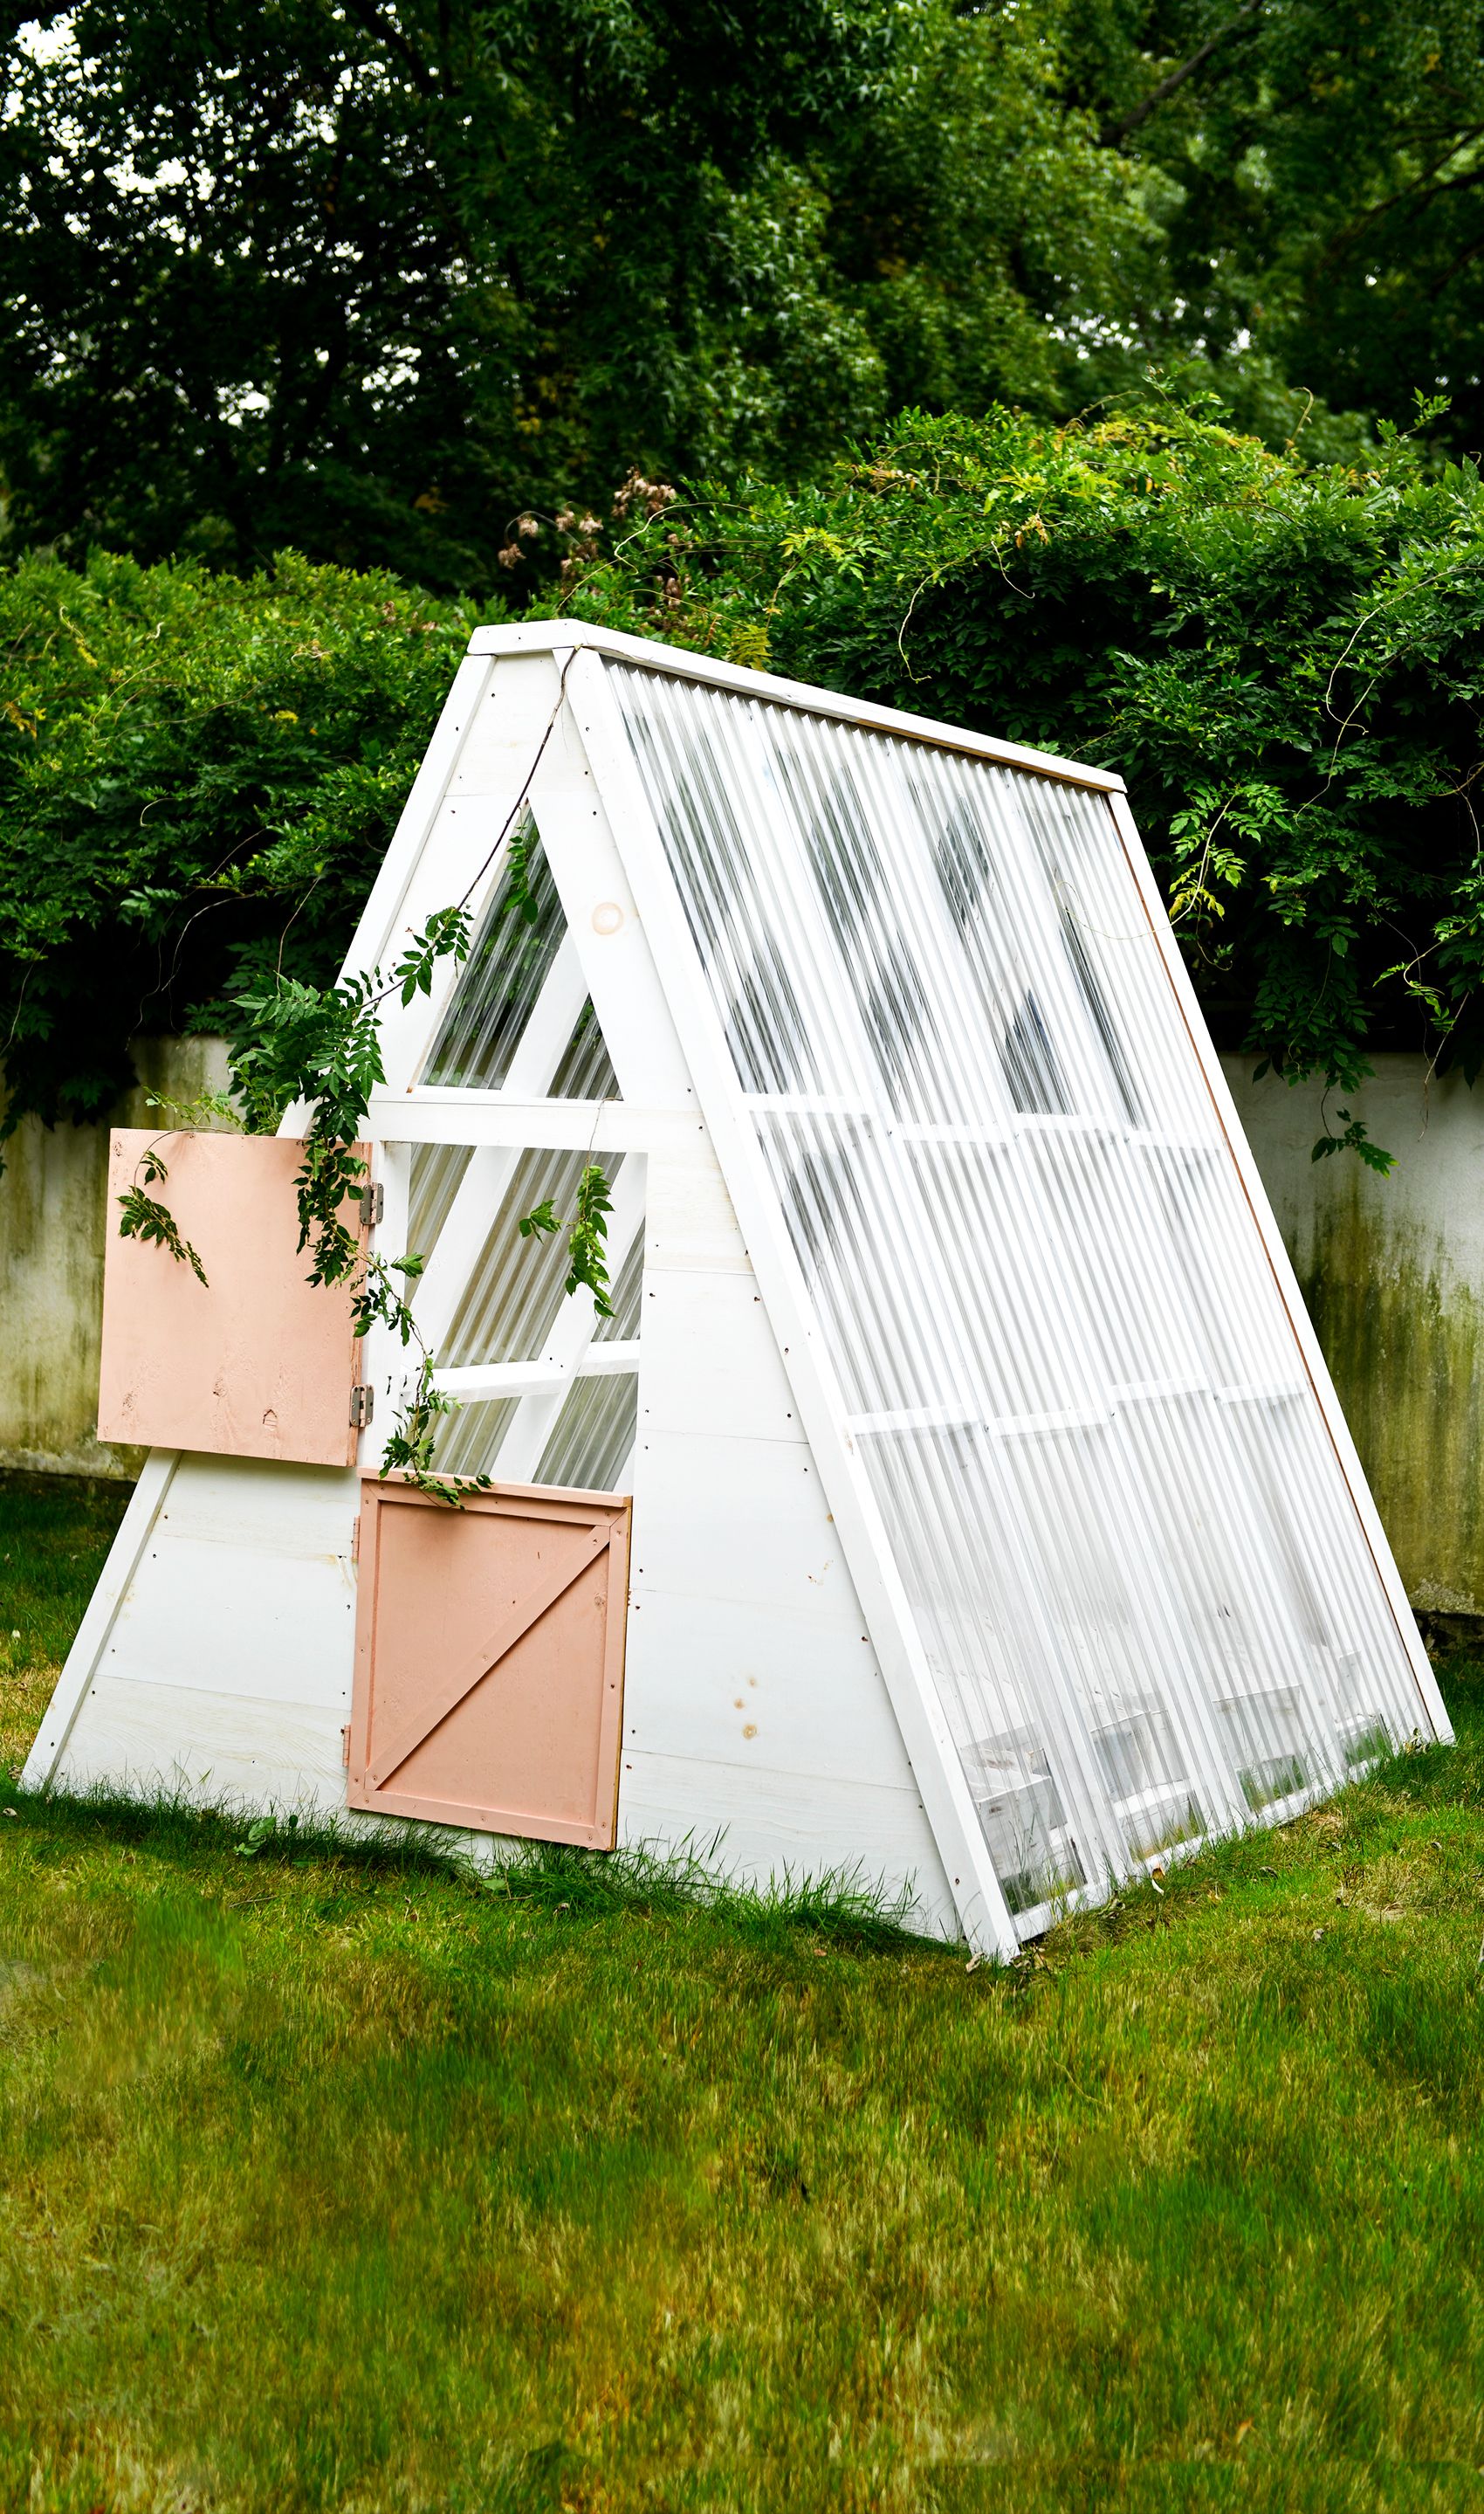 34 Creative Small Garden Ideas - Indoor and Outdoor Garden Designs for  Small Spaces